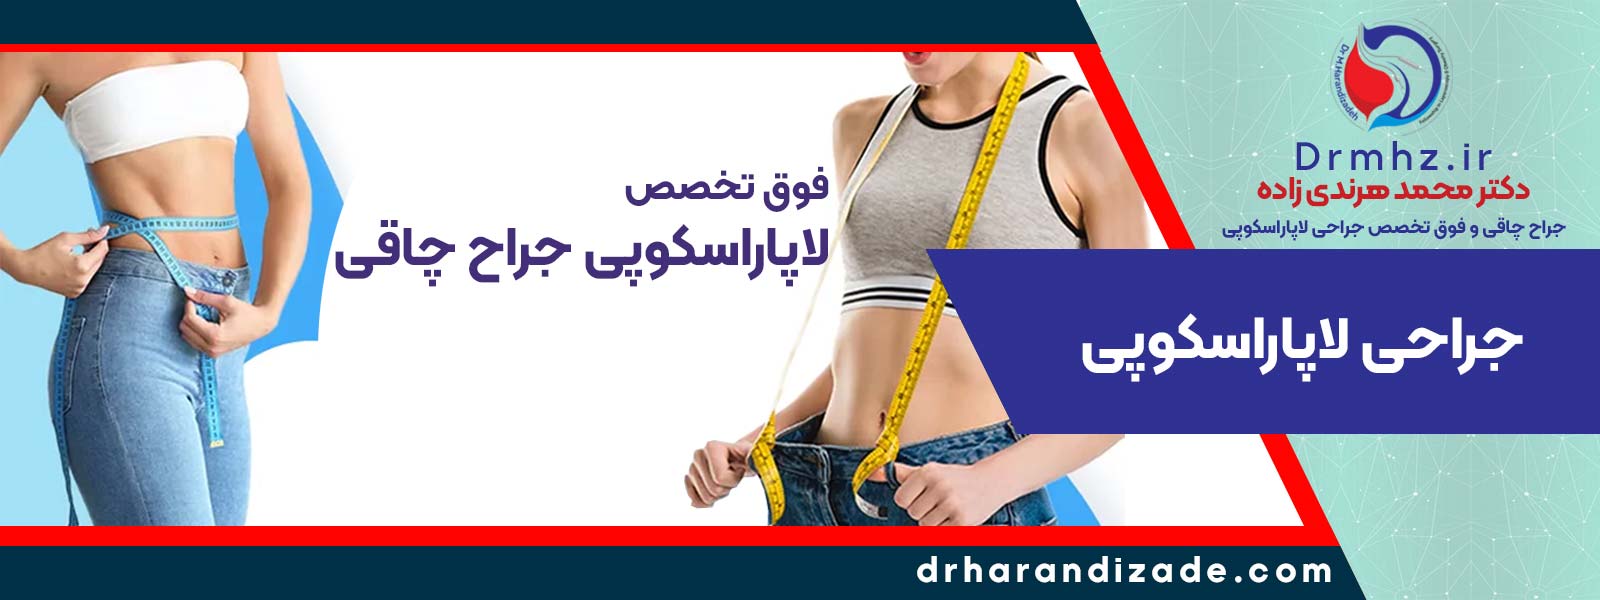 laparoscopy obesity esfahan - جراحی لاپاراسکوپی چاقی در اصفهان